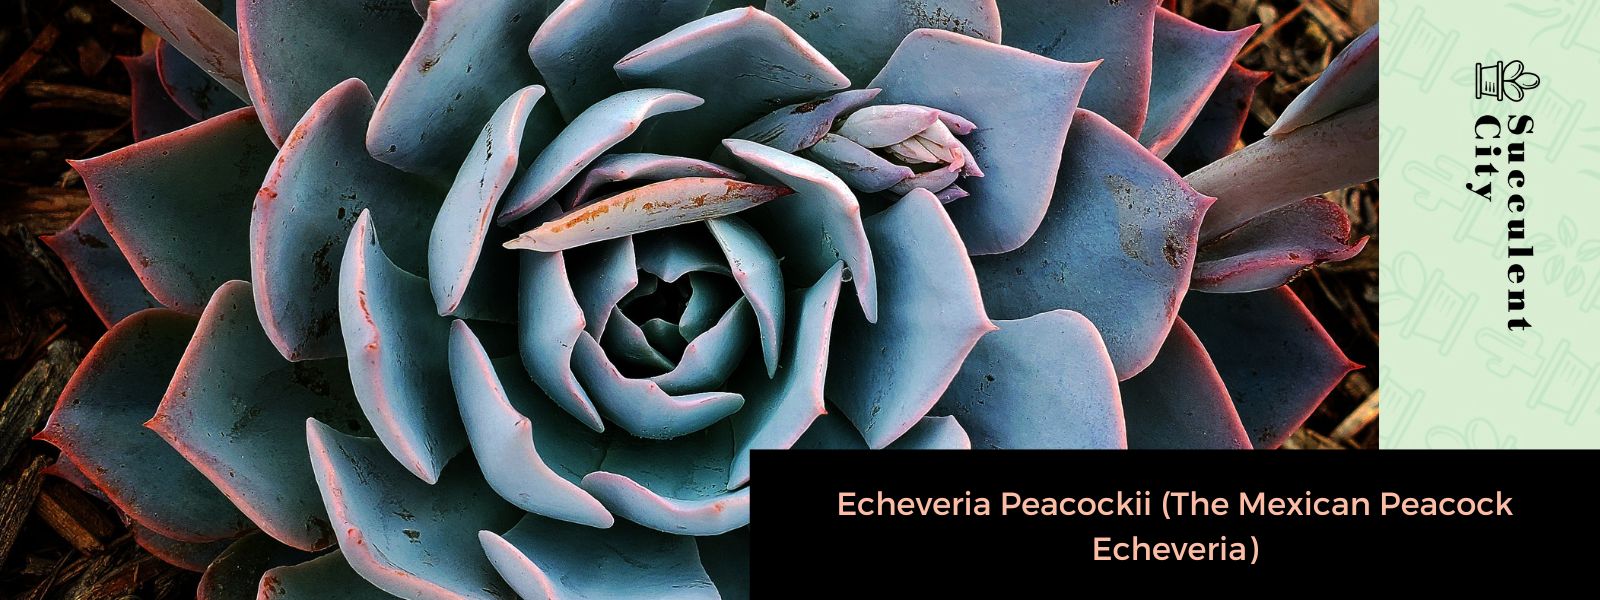 Echeveria Peacockii (La Echeveria Pavo Real Mexicana)